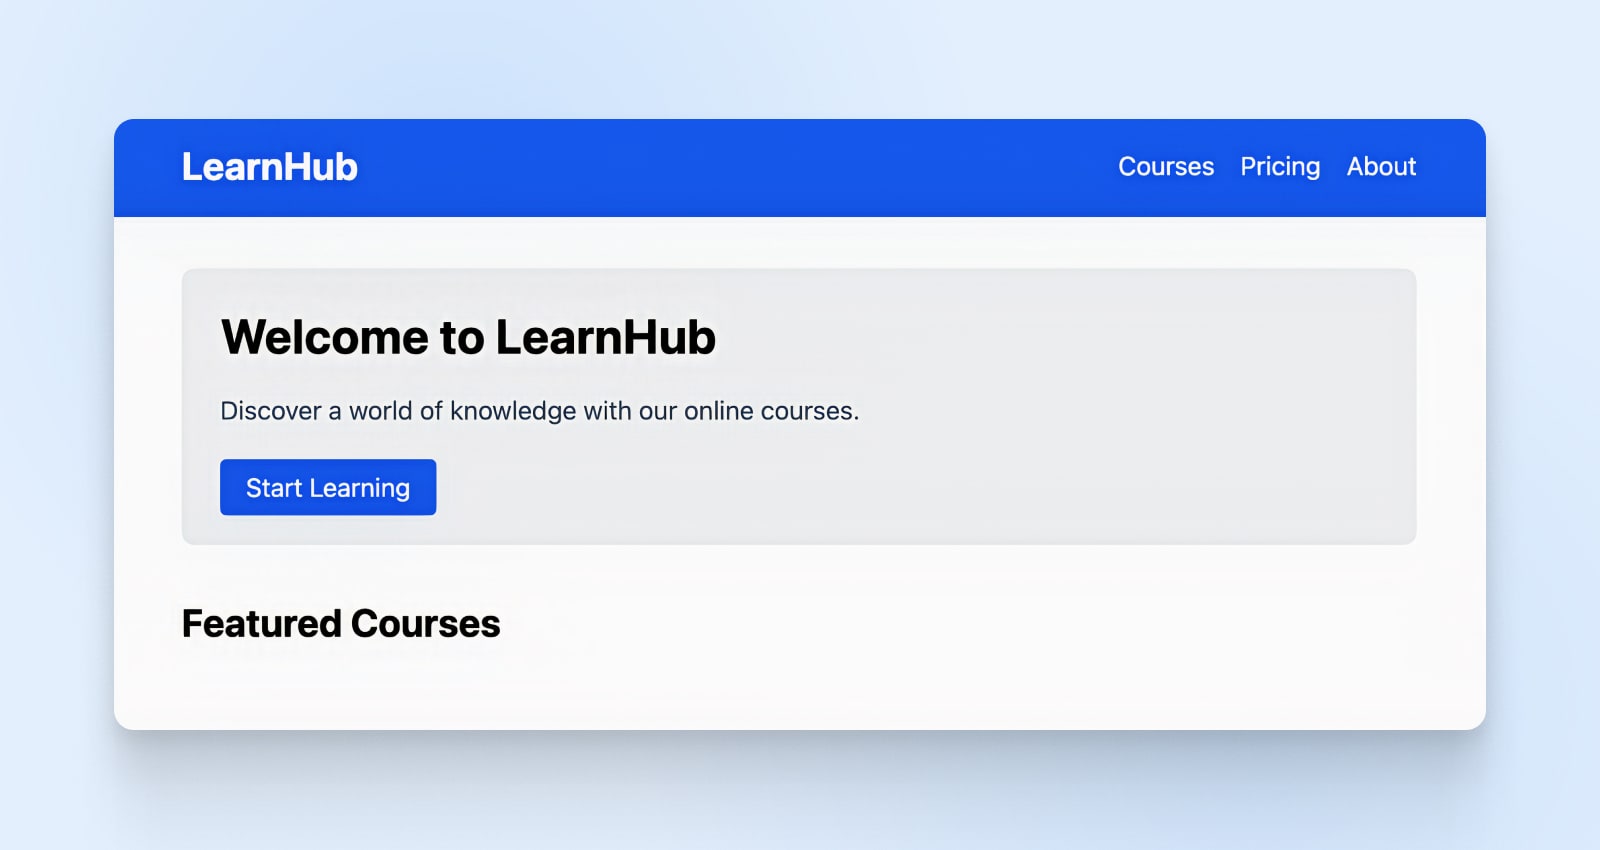 Título grande y en negrita "Bienvenido a LearnHub", un botón azul "Comenzar a aprender" debajo y "Cursos destacados" en negrita.